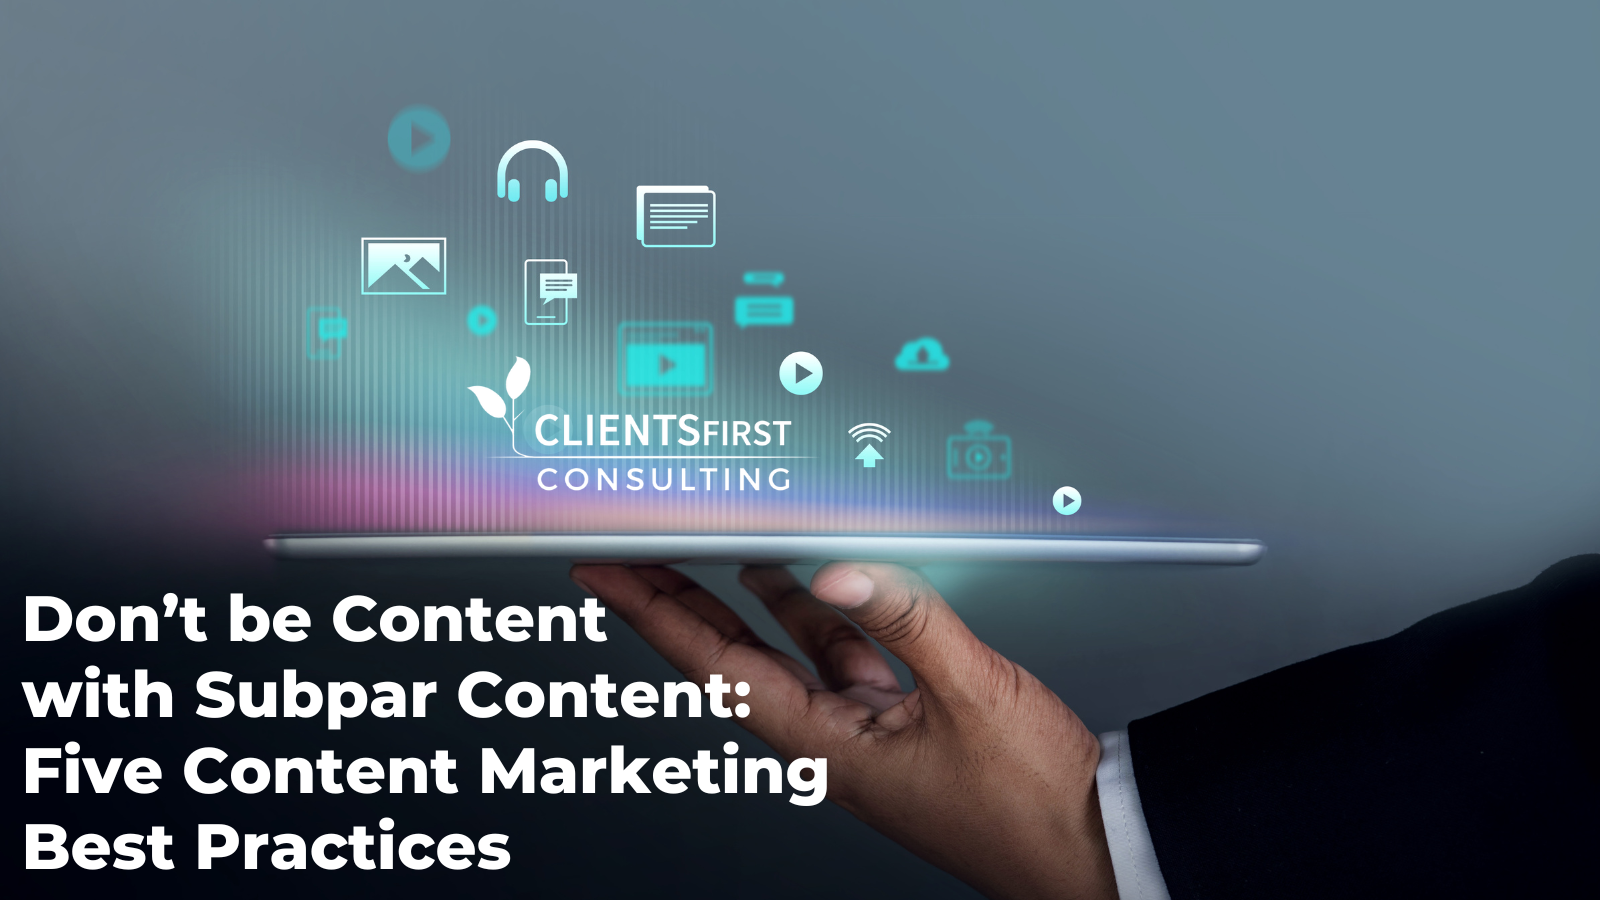 Don't settle for subpar content: 5 best practices for content marketing